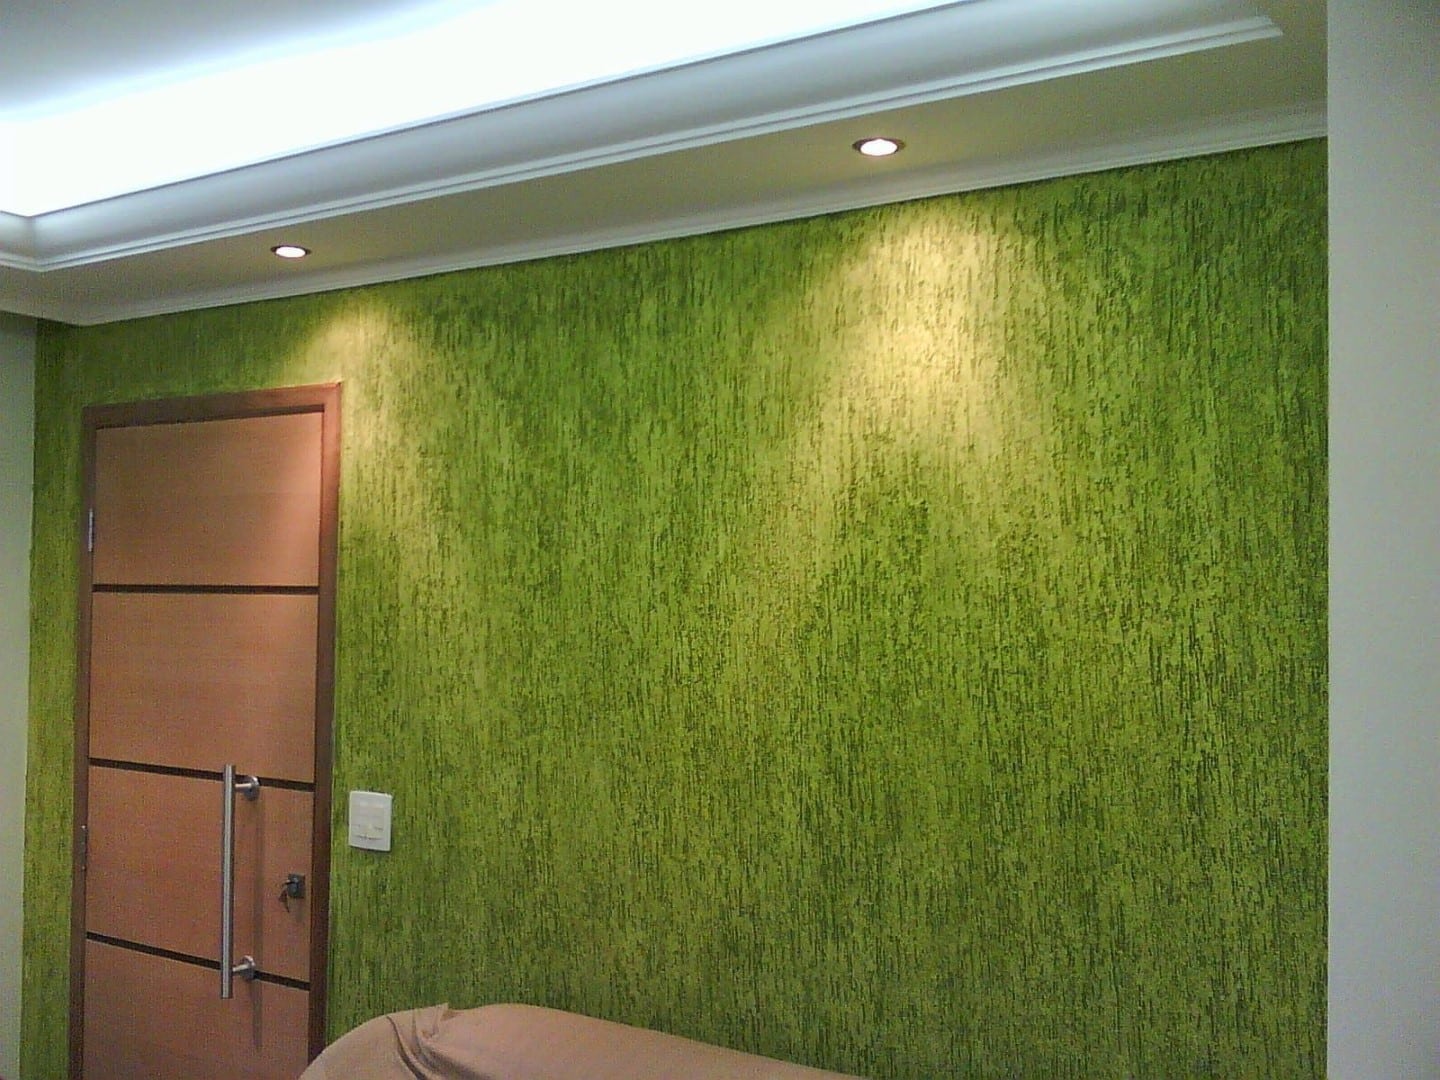 Descubra como aplicar textura de parede, e assim, transformar os ambientes da sua casa por meio de um processo fácil e divertido!